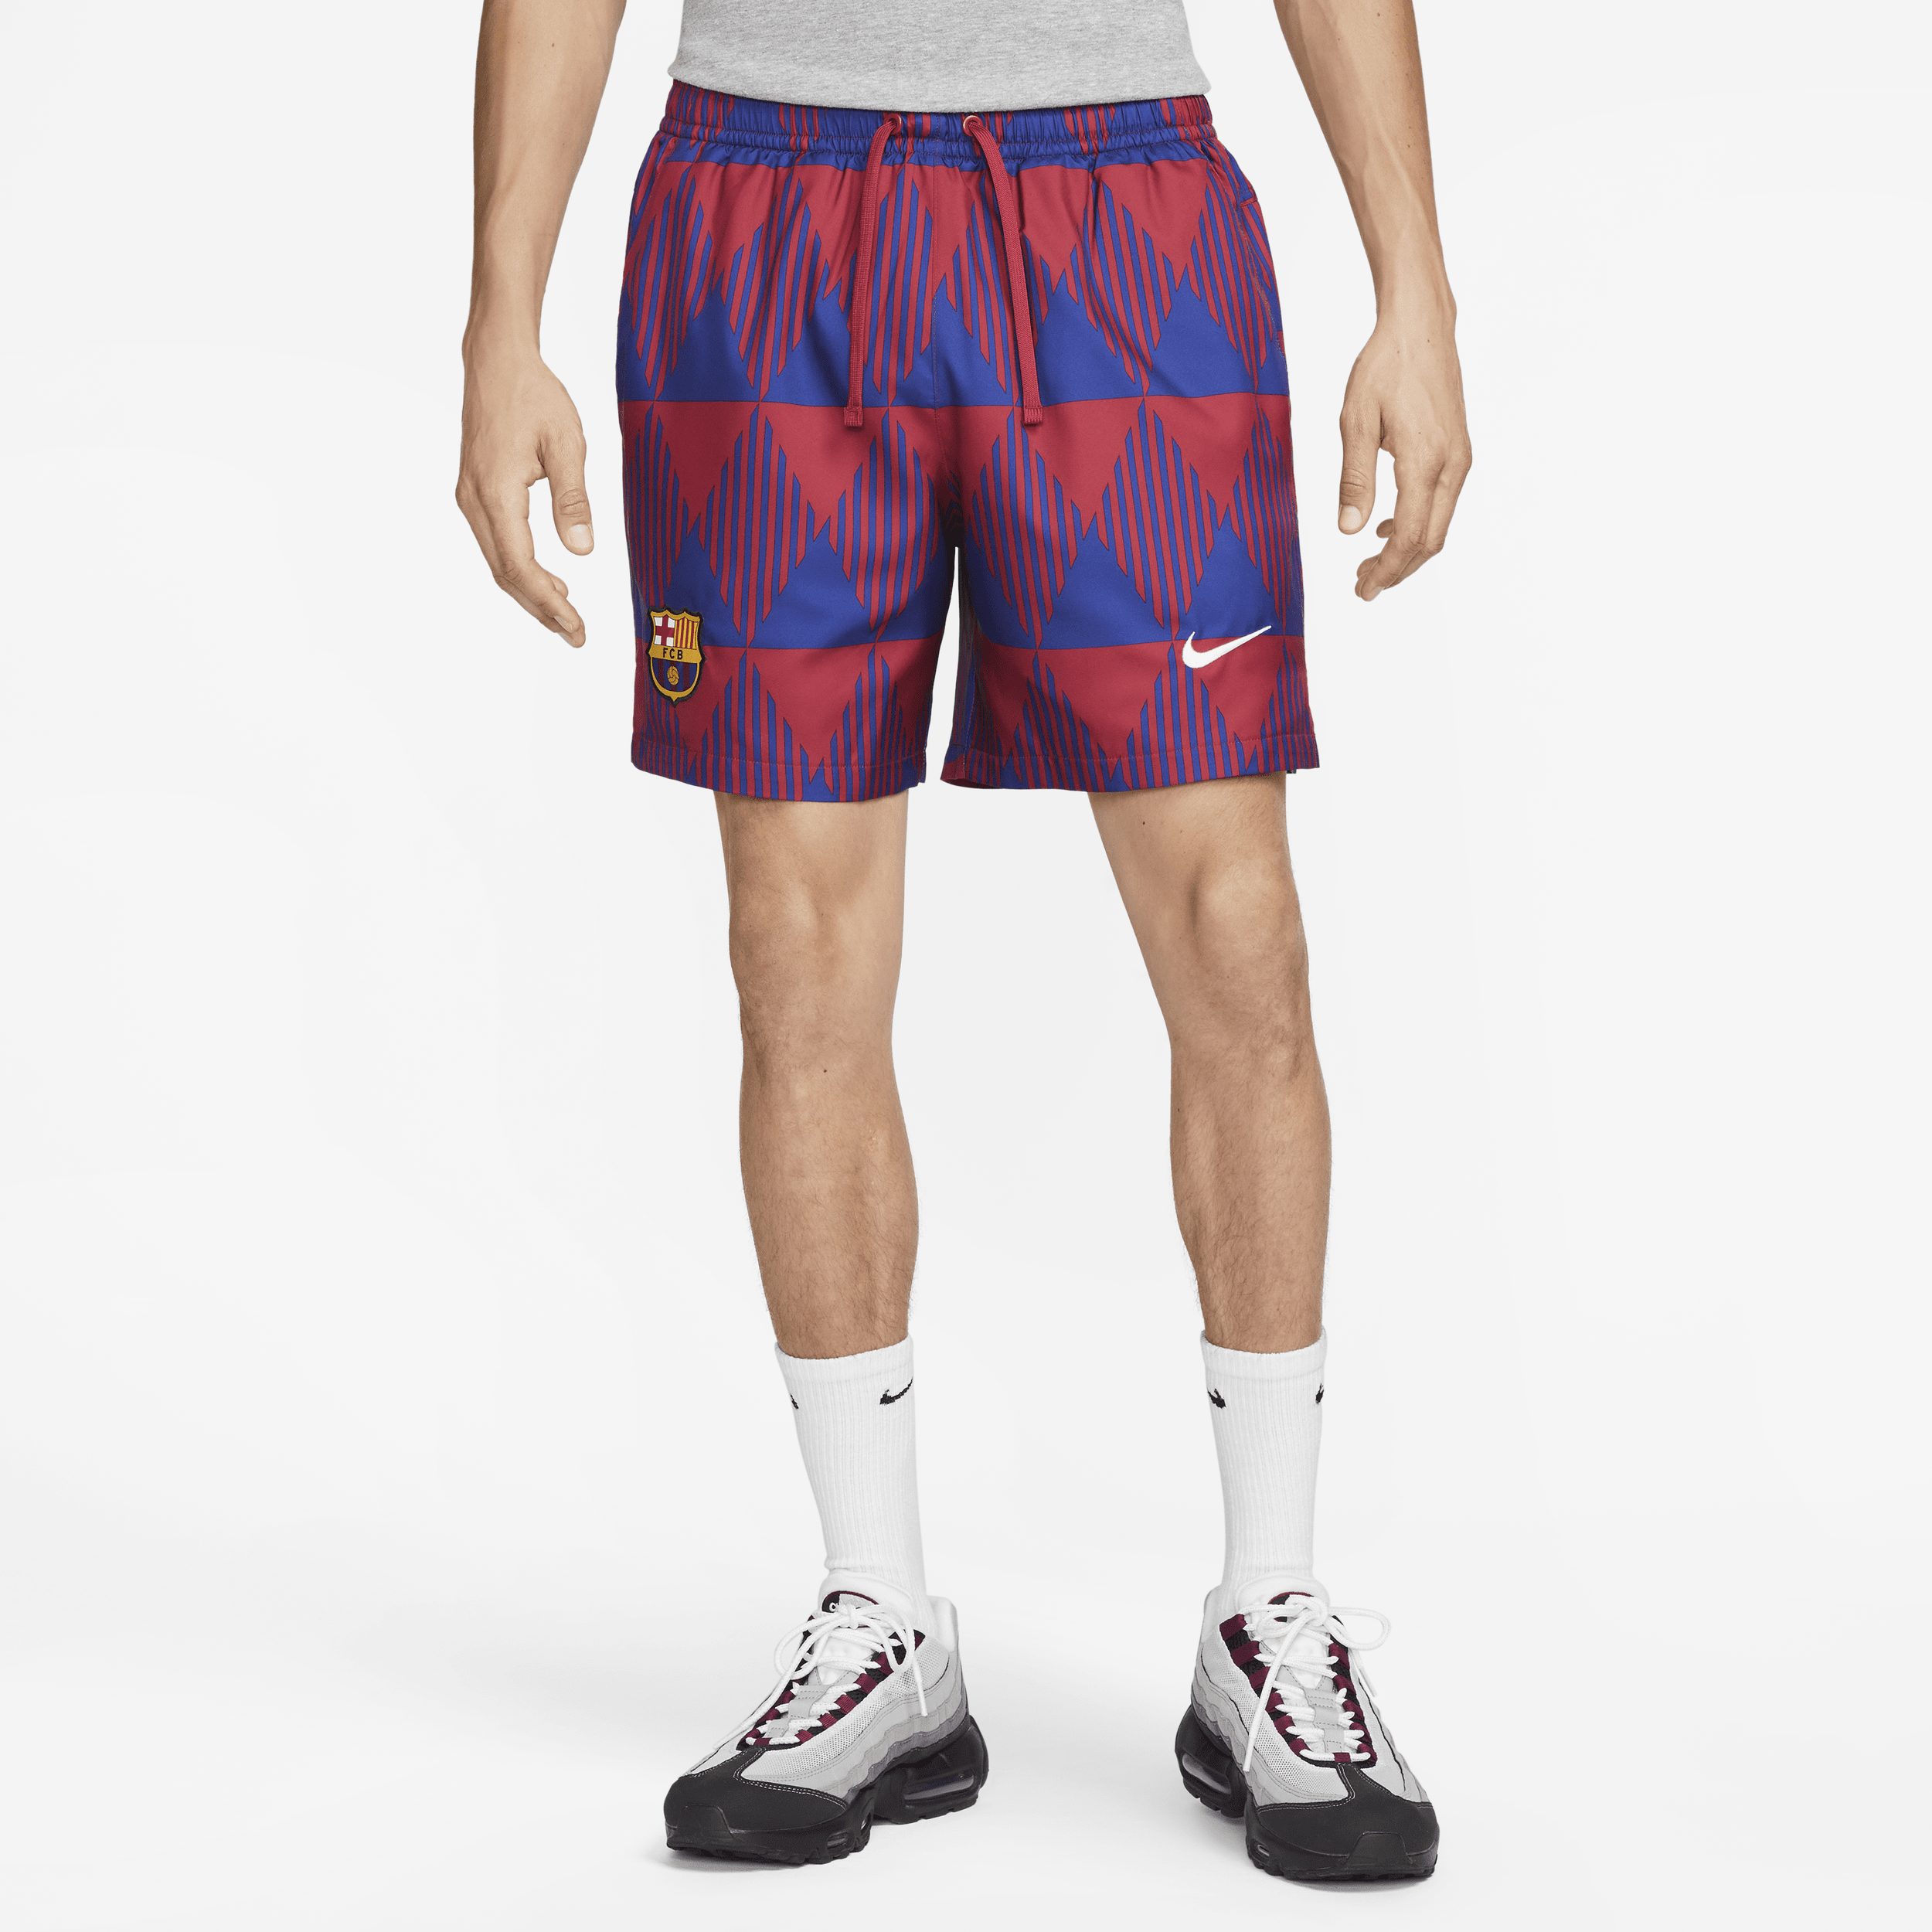 FC Barcelona Flow Nike-fodboldshorts med grafik til mænd - rød